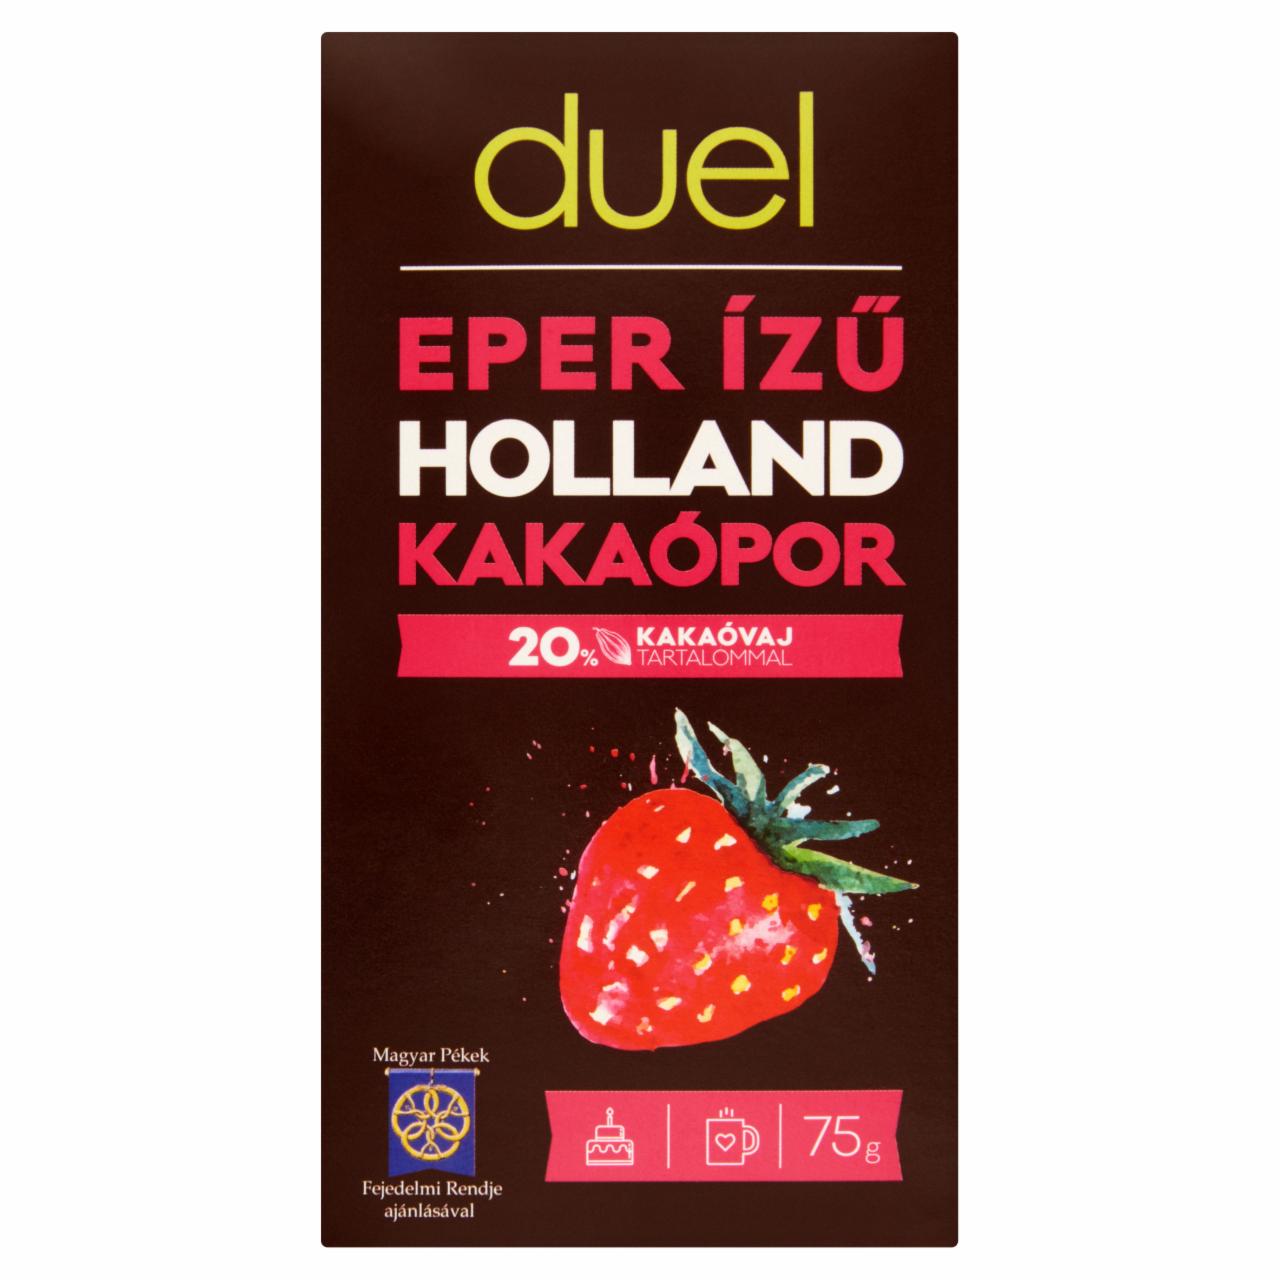 Képek - Duel eper ízű holland kakaópor 75 g